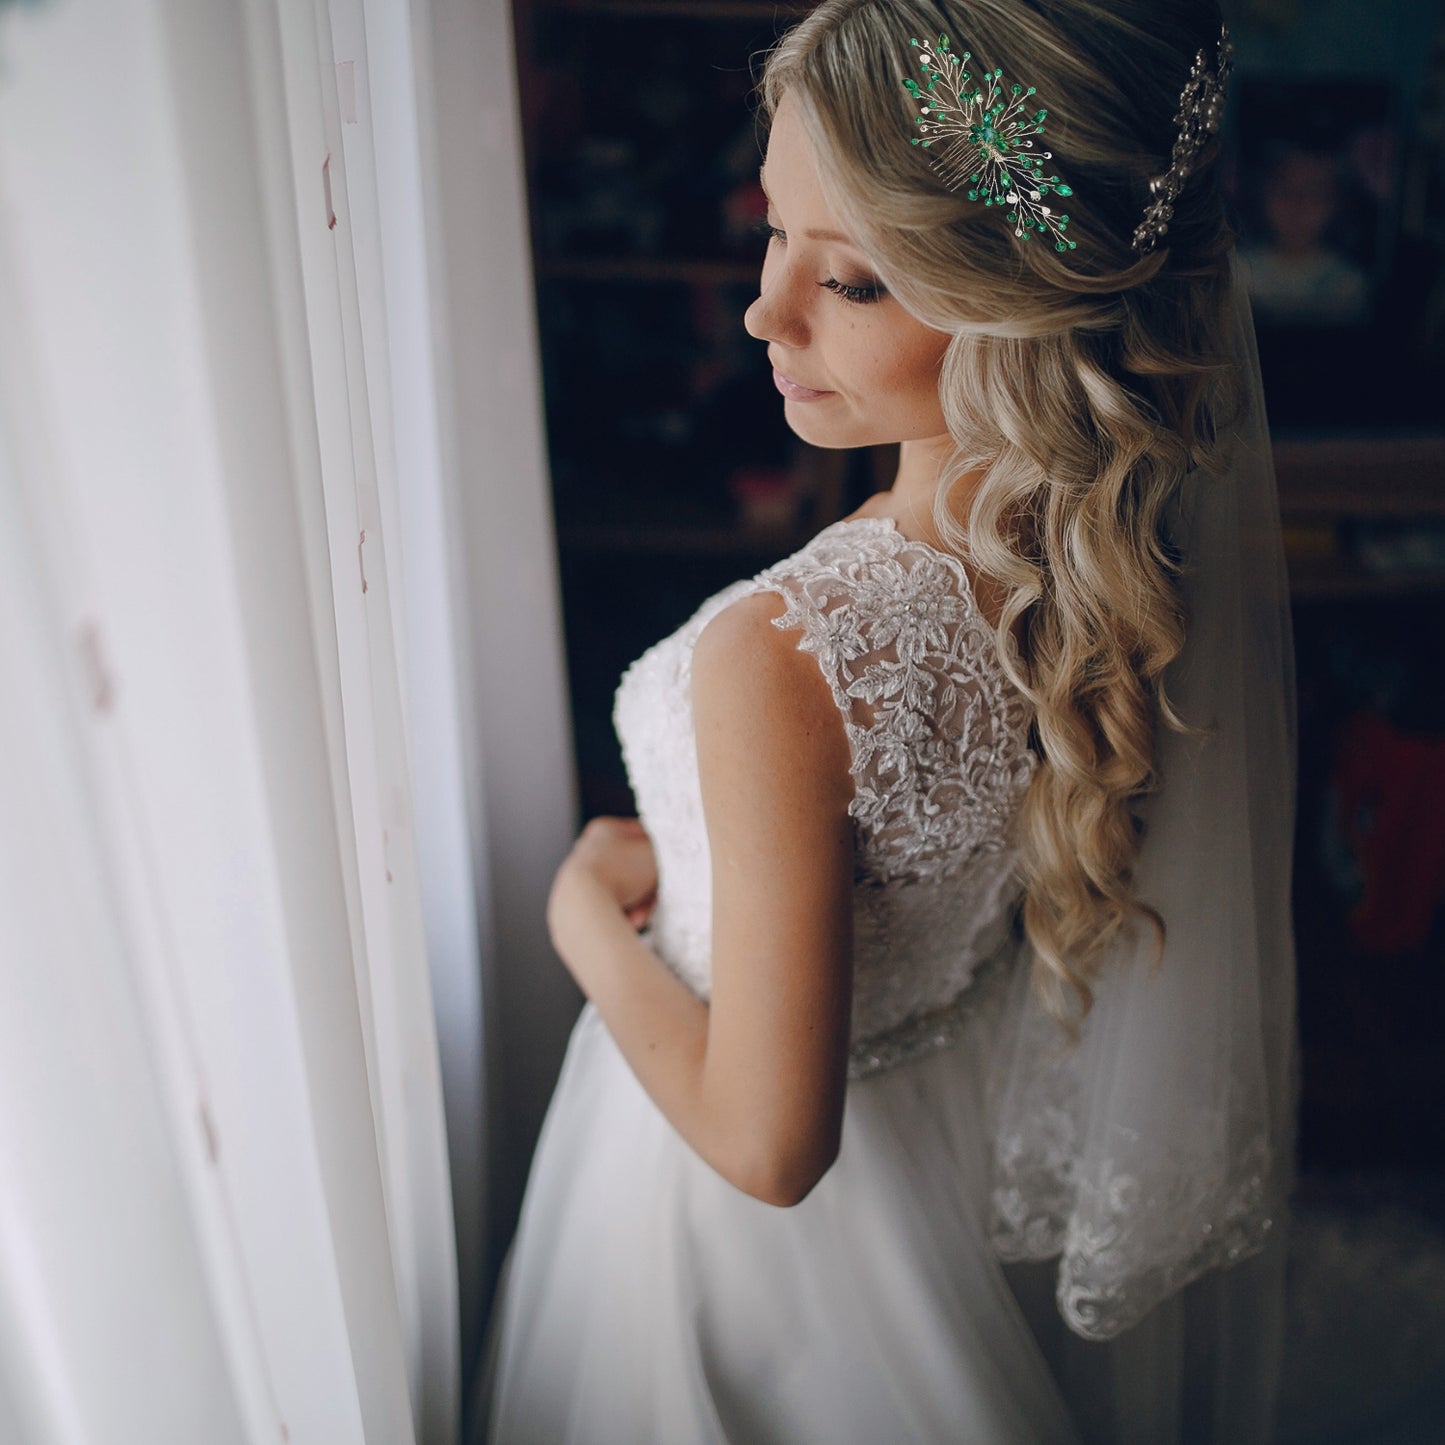 Bride Wedding Hair Comb Crystal Rhinestone Leaf Hair Piece Accessories for Women Girls